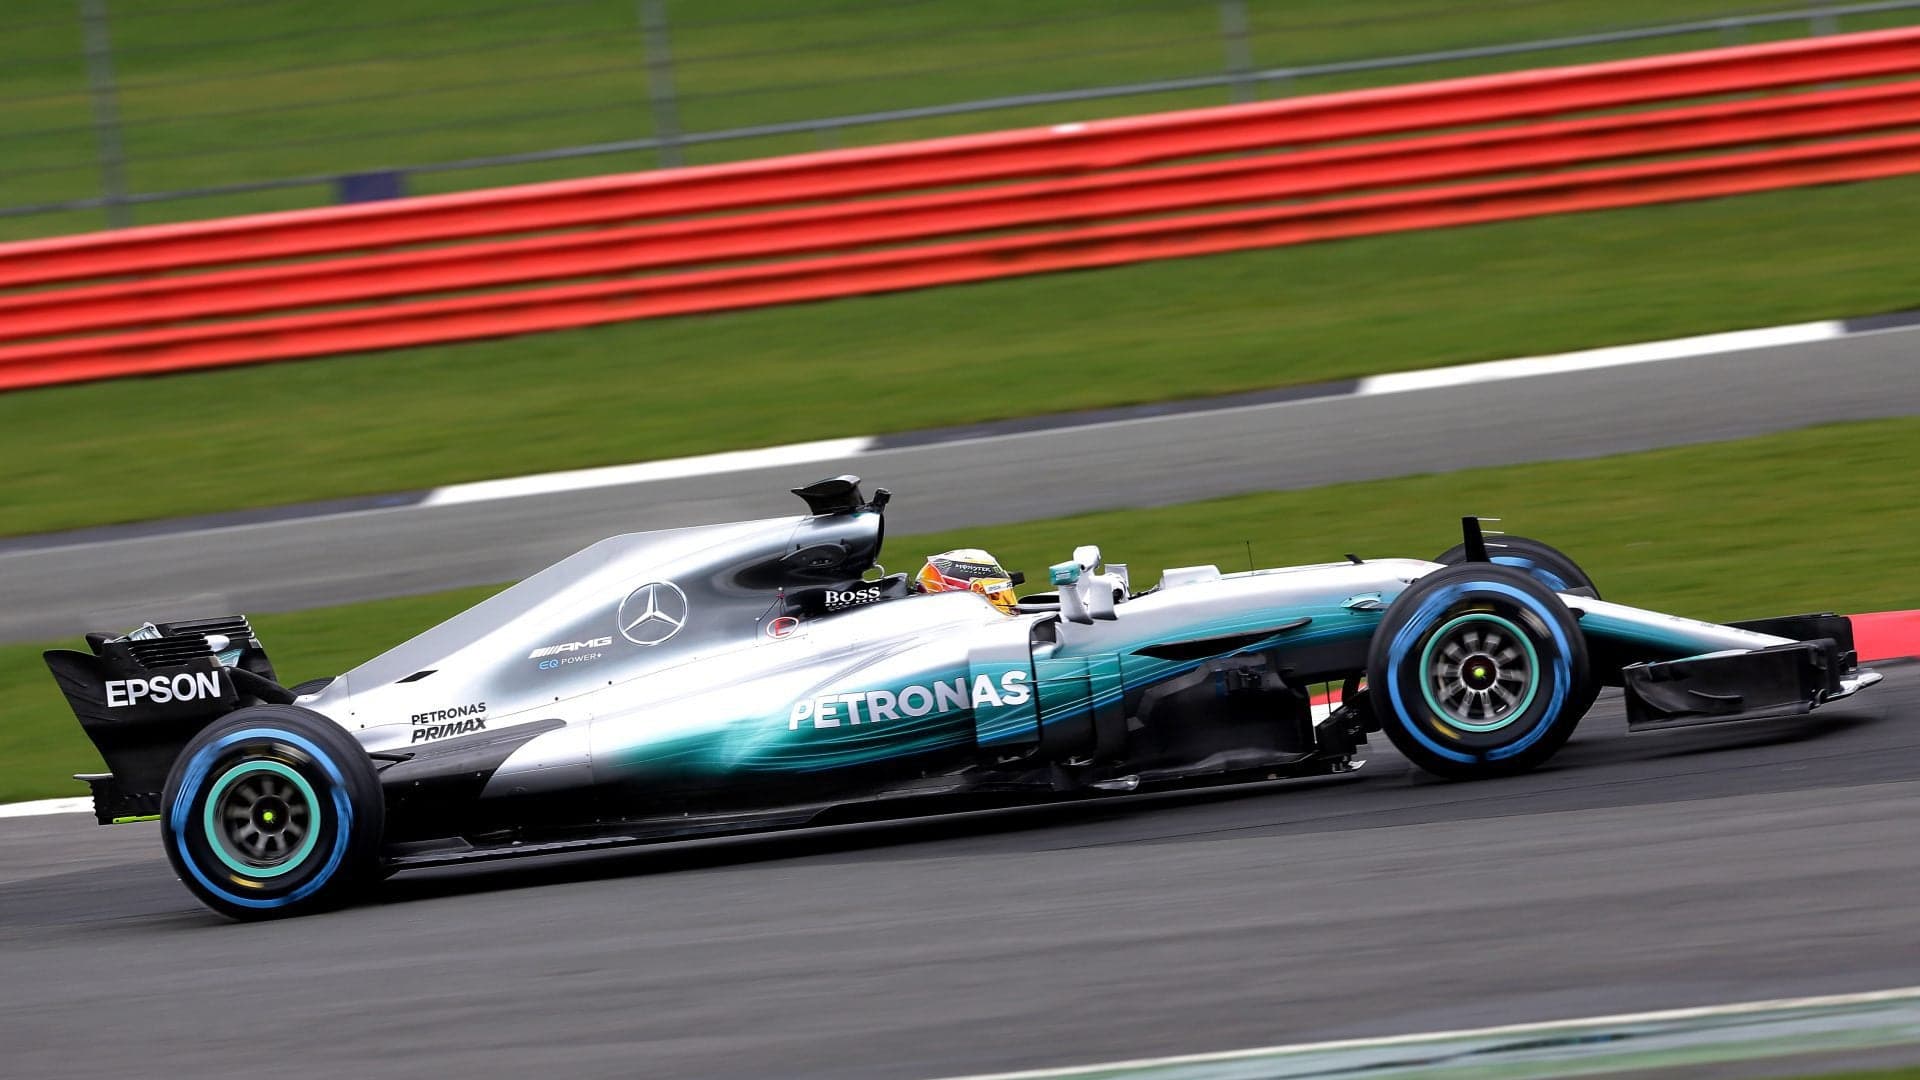 Mercedes-AMG F1 W08 Formula 1 Car Breaks Cover